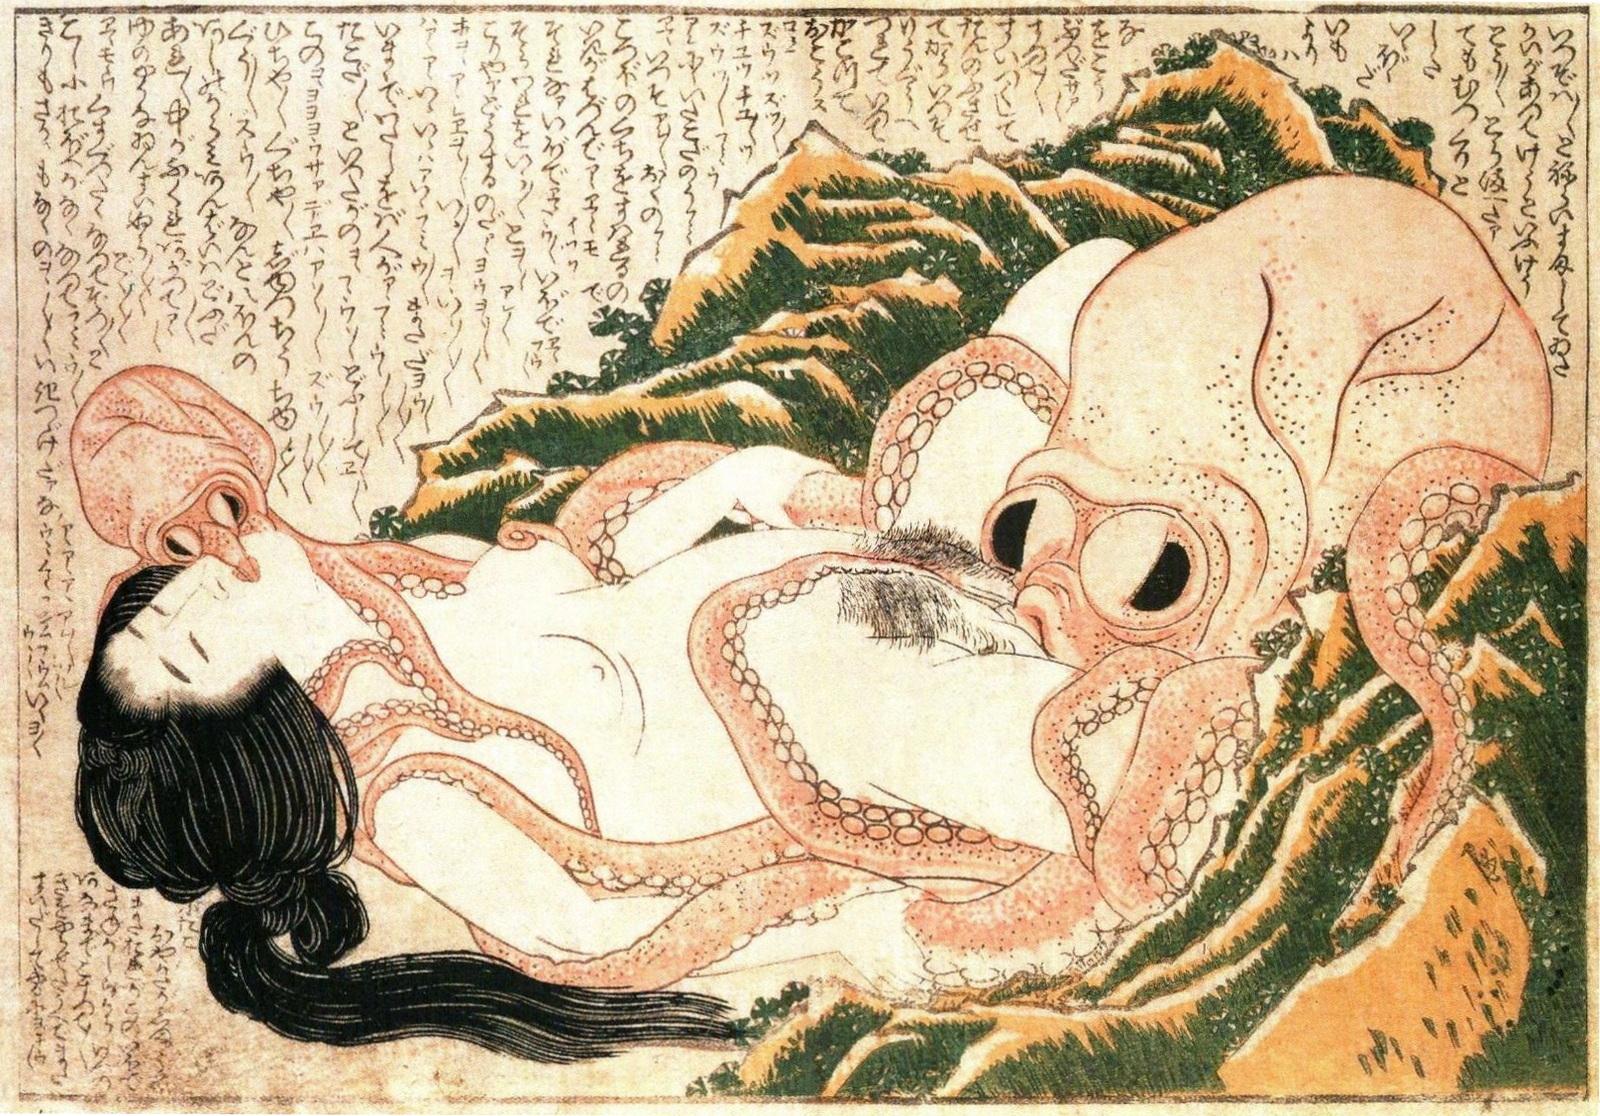 "Le Rêve de la femme du pêcheur, shunga (estampe érotique) d'Hokusai. [Wikimédia Commons]